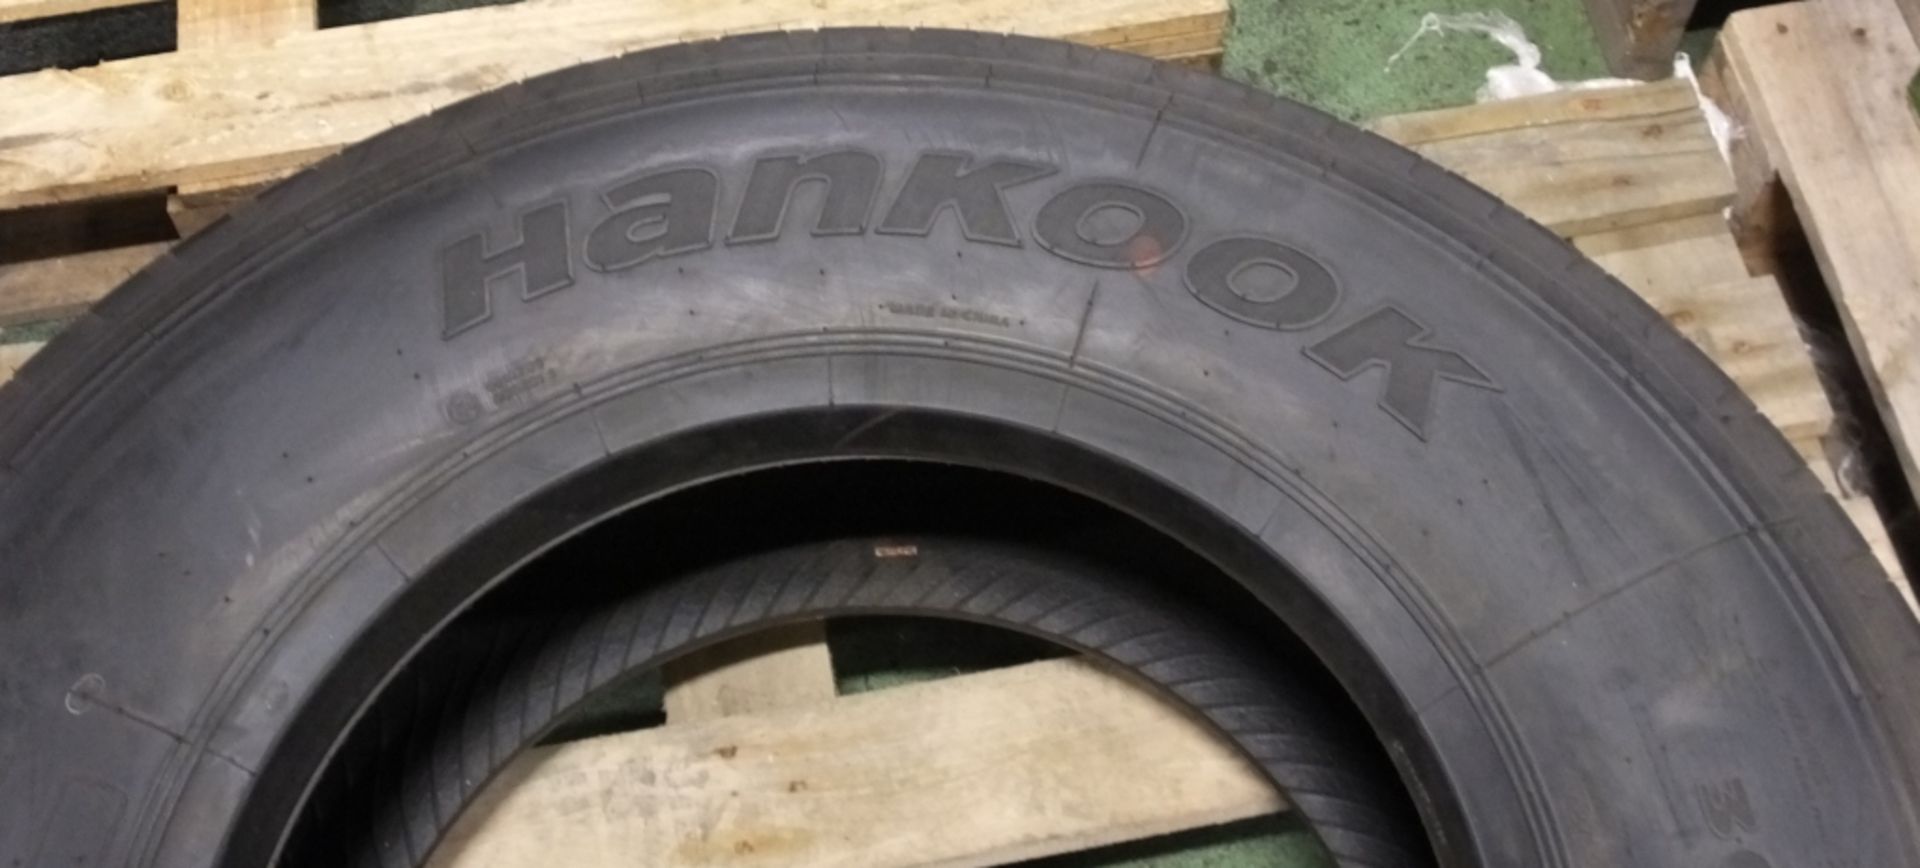 Hankook AH11 305/70R19.5 tyre (new & unused) - Image 2 of 7